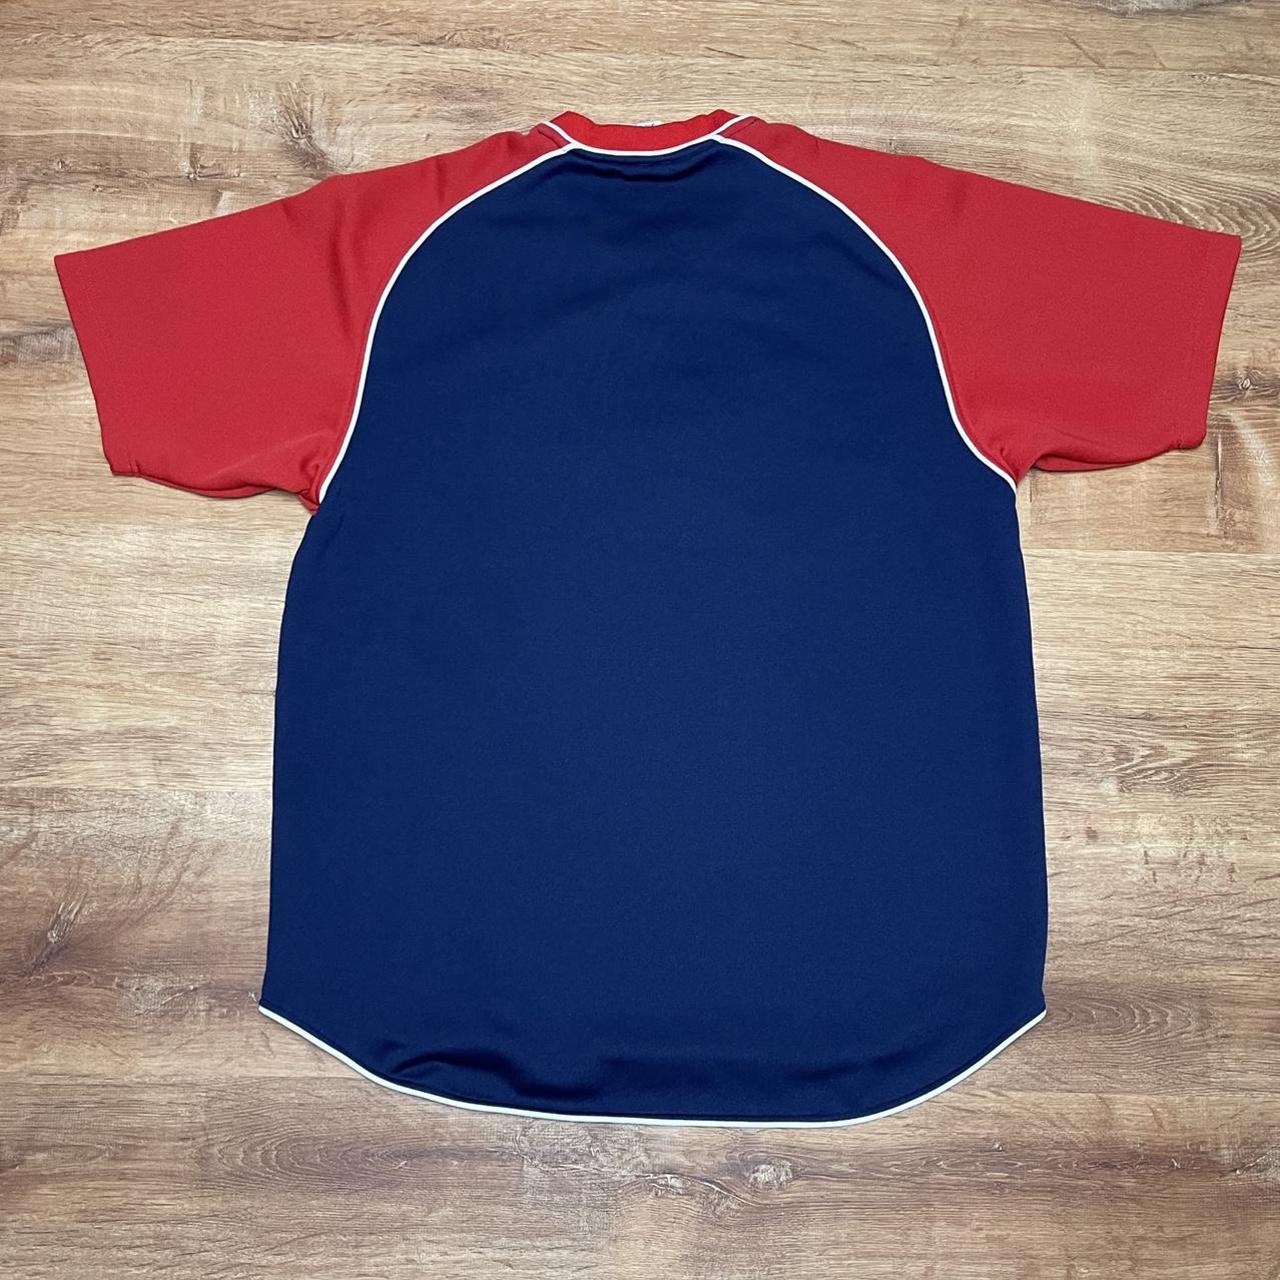 Red sox womens jersey type shirt - Depop